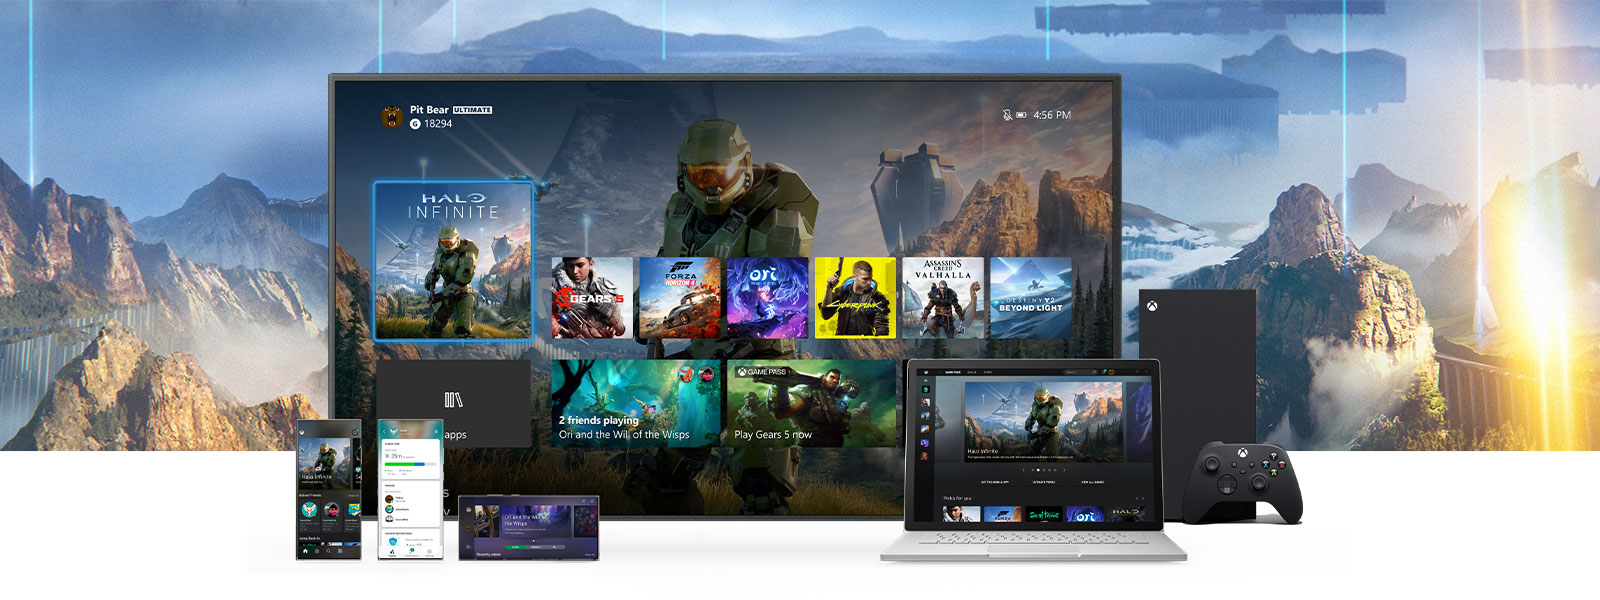 L’interface Xbox est affichée sur un téléviseur à côté d’une Xbox Series X. D’autres appareils comme des appareils PC et mobile sont devant le téléviseur.